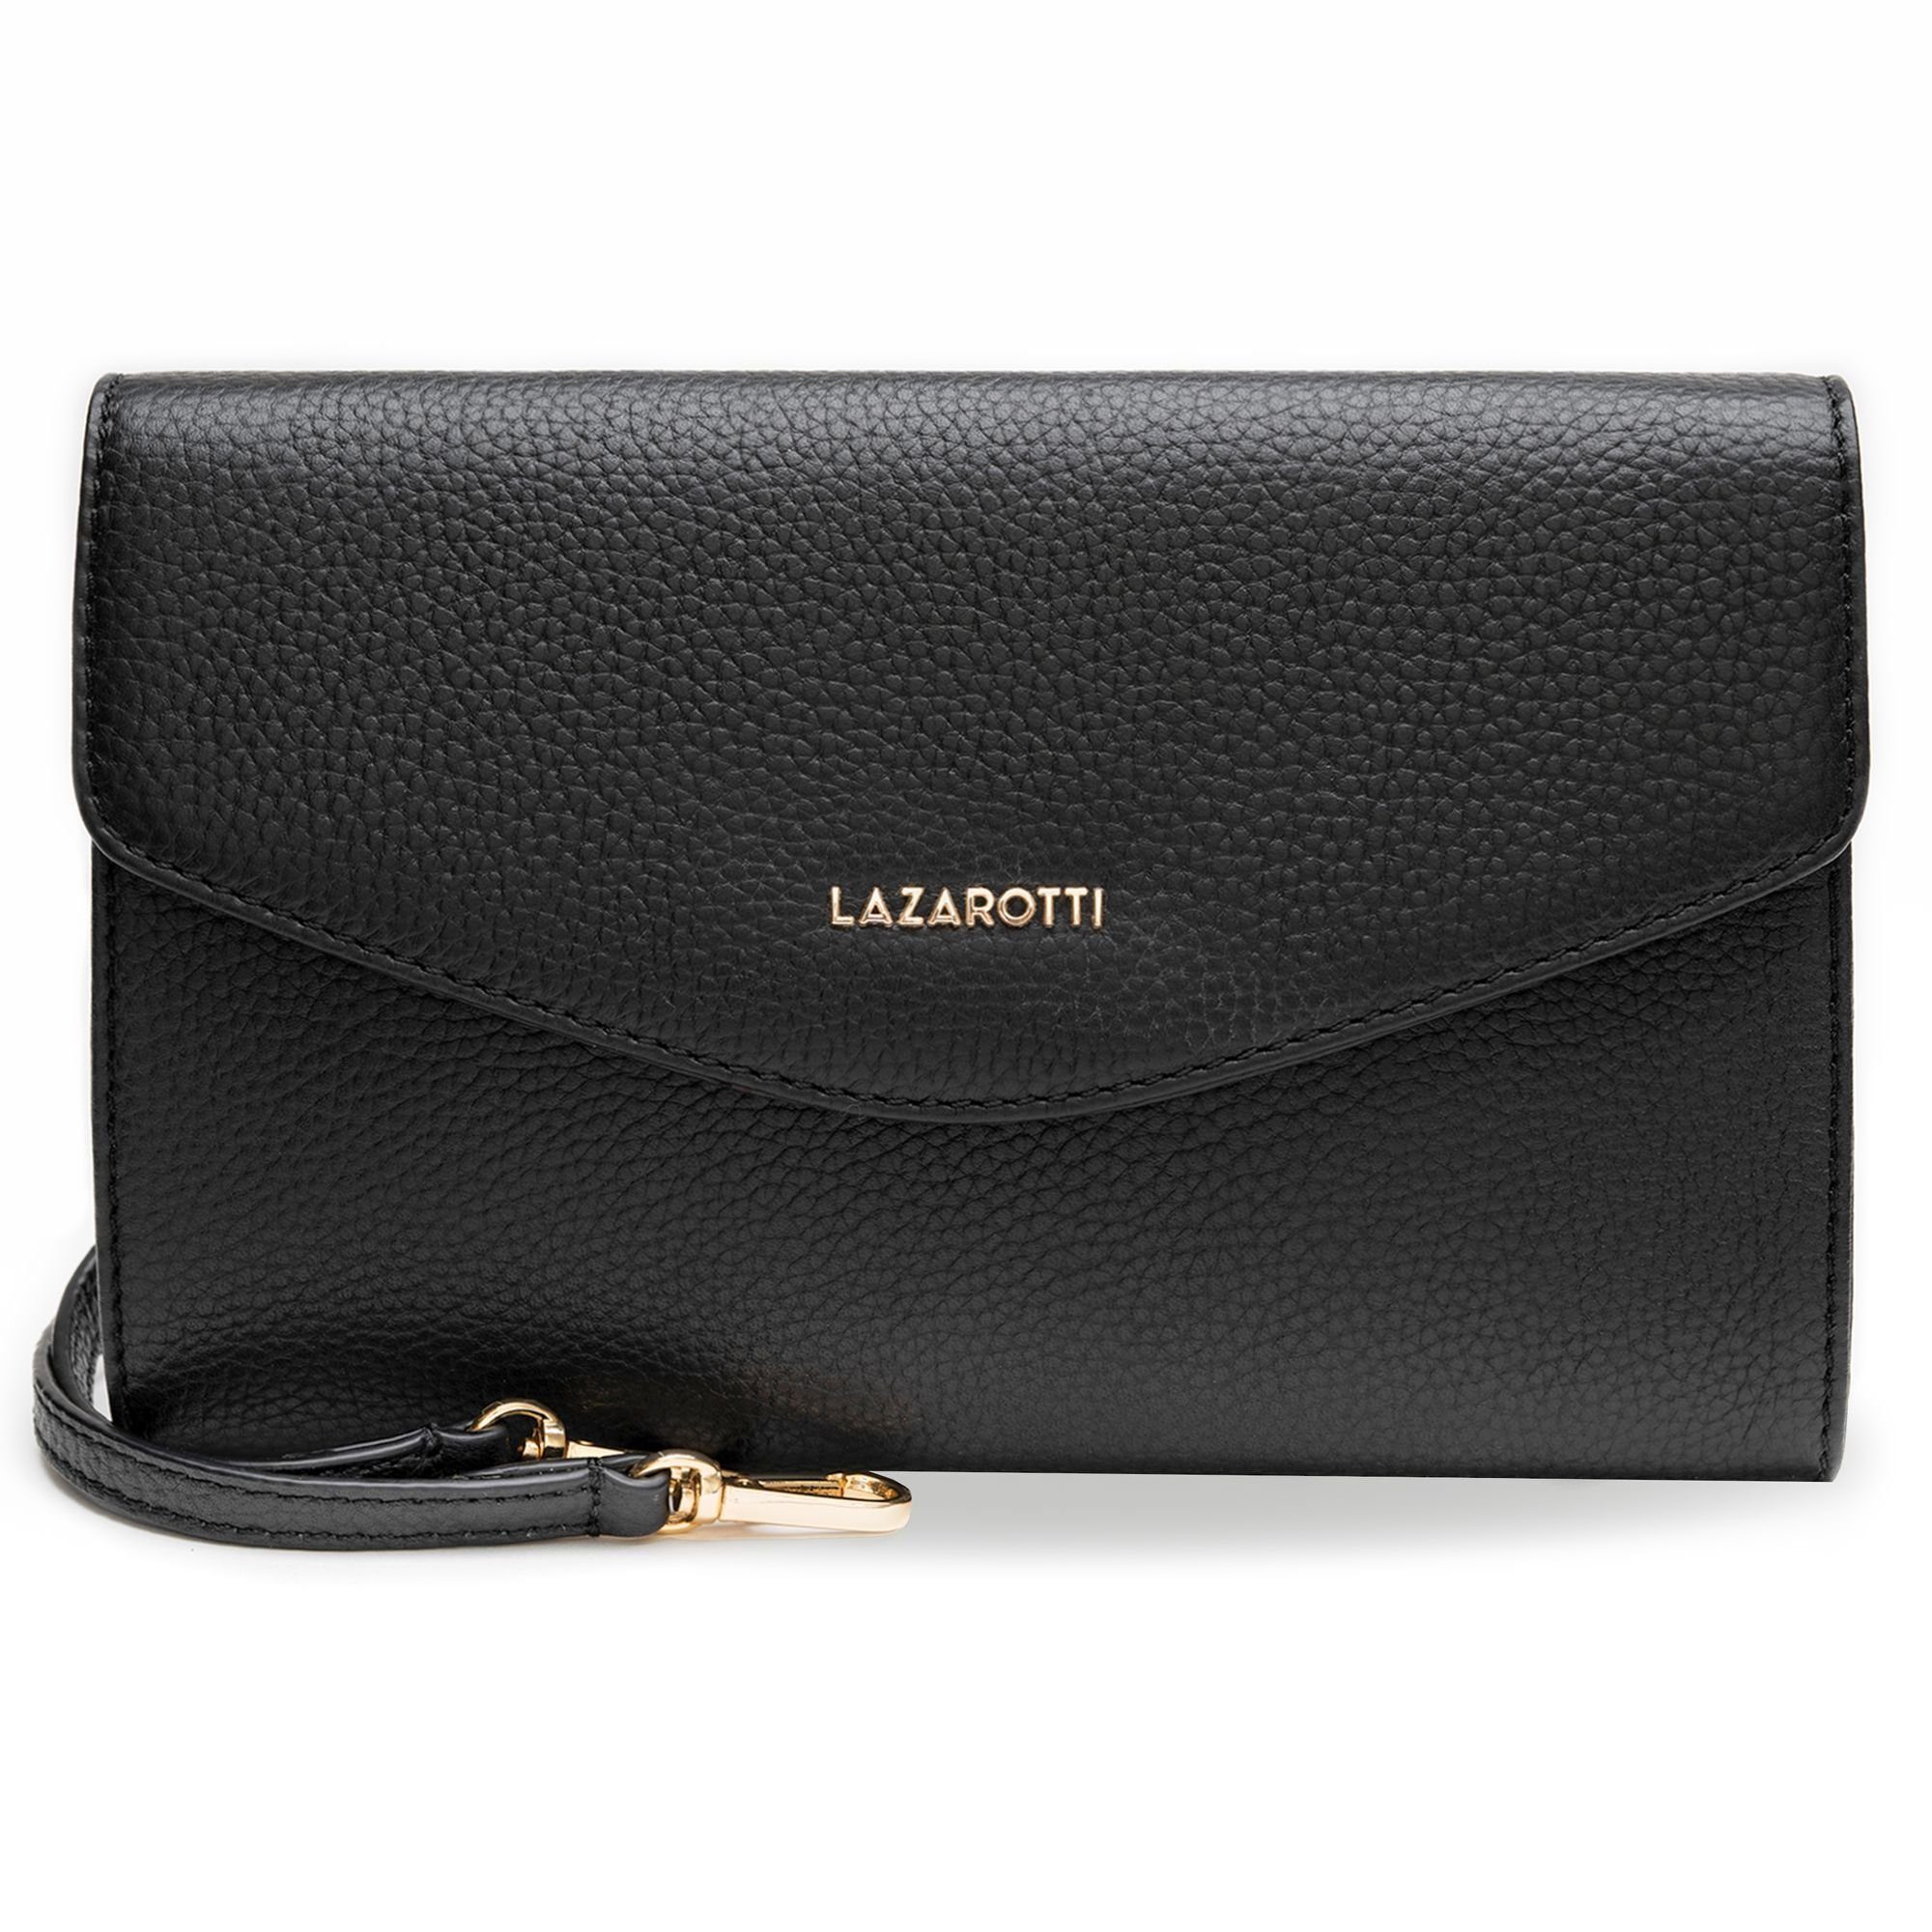 Lazarotti Clutch Bologna Leather, Leder black